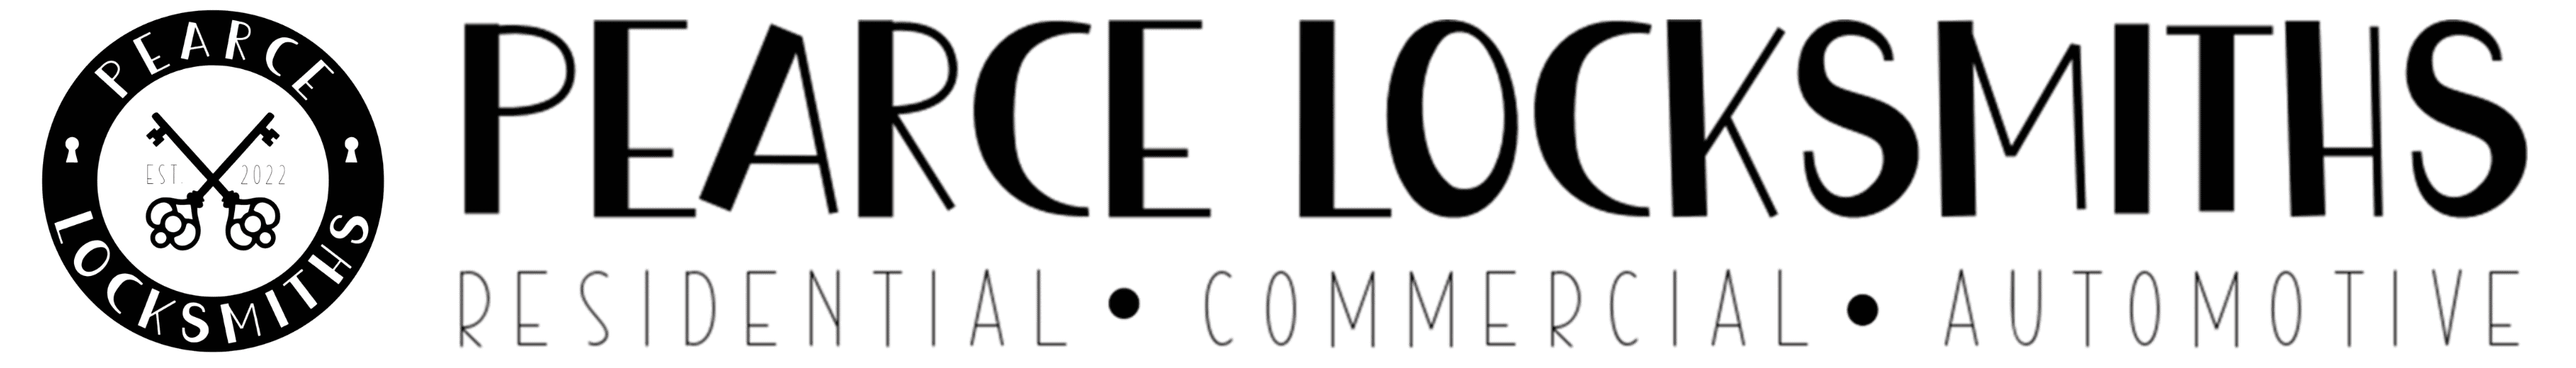 Logo Extended - Pearce Locksmith